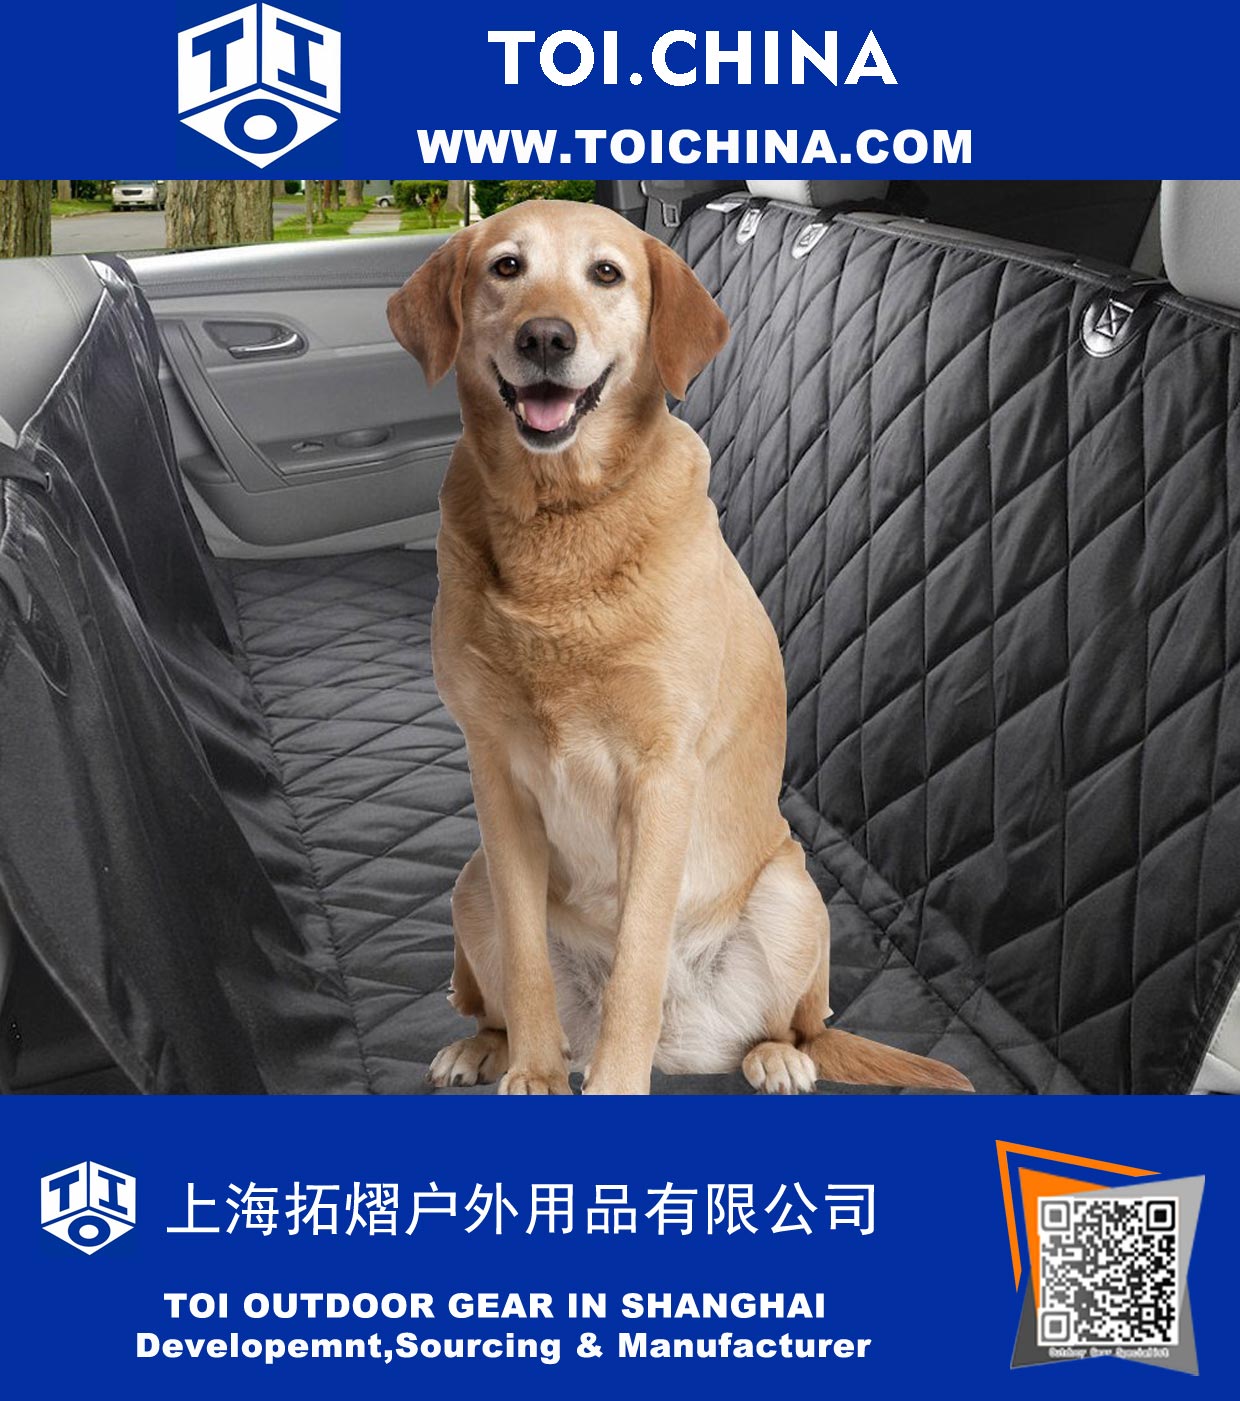 Étanche Pet Car Seat Cover-Dog Hamac voiture, camion, VUS Antiderapant support et sécurité durable Ancres-15% plus grande facilement nettoyer et protéger vos sièges